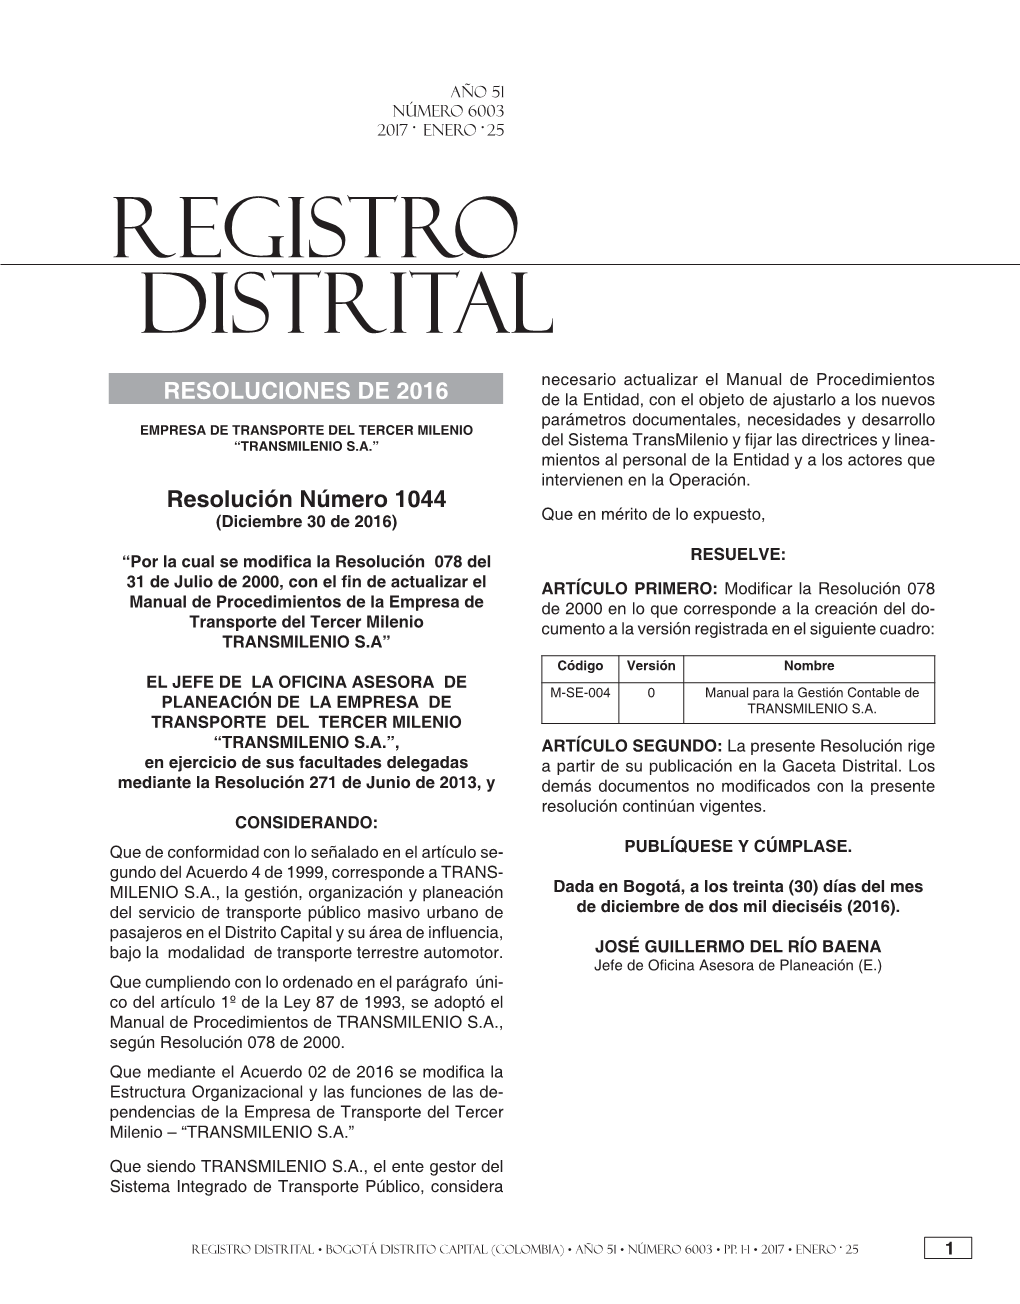 Registro Distrital